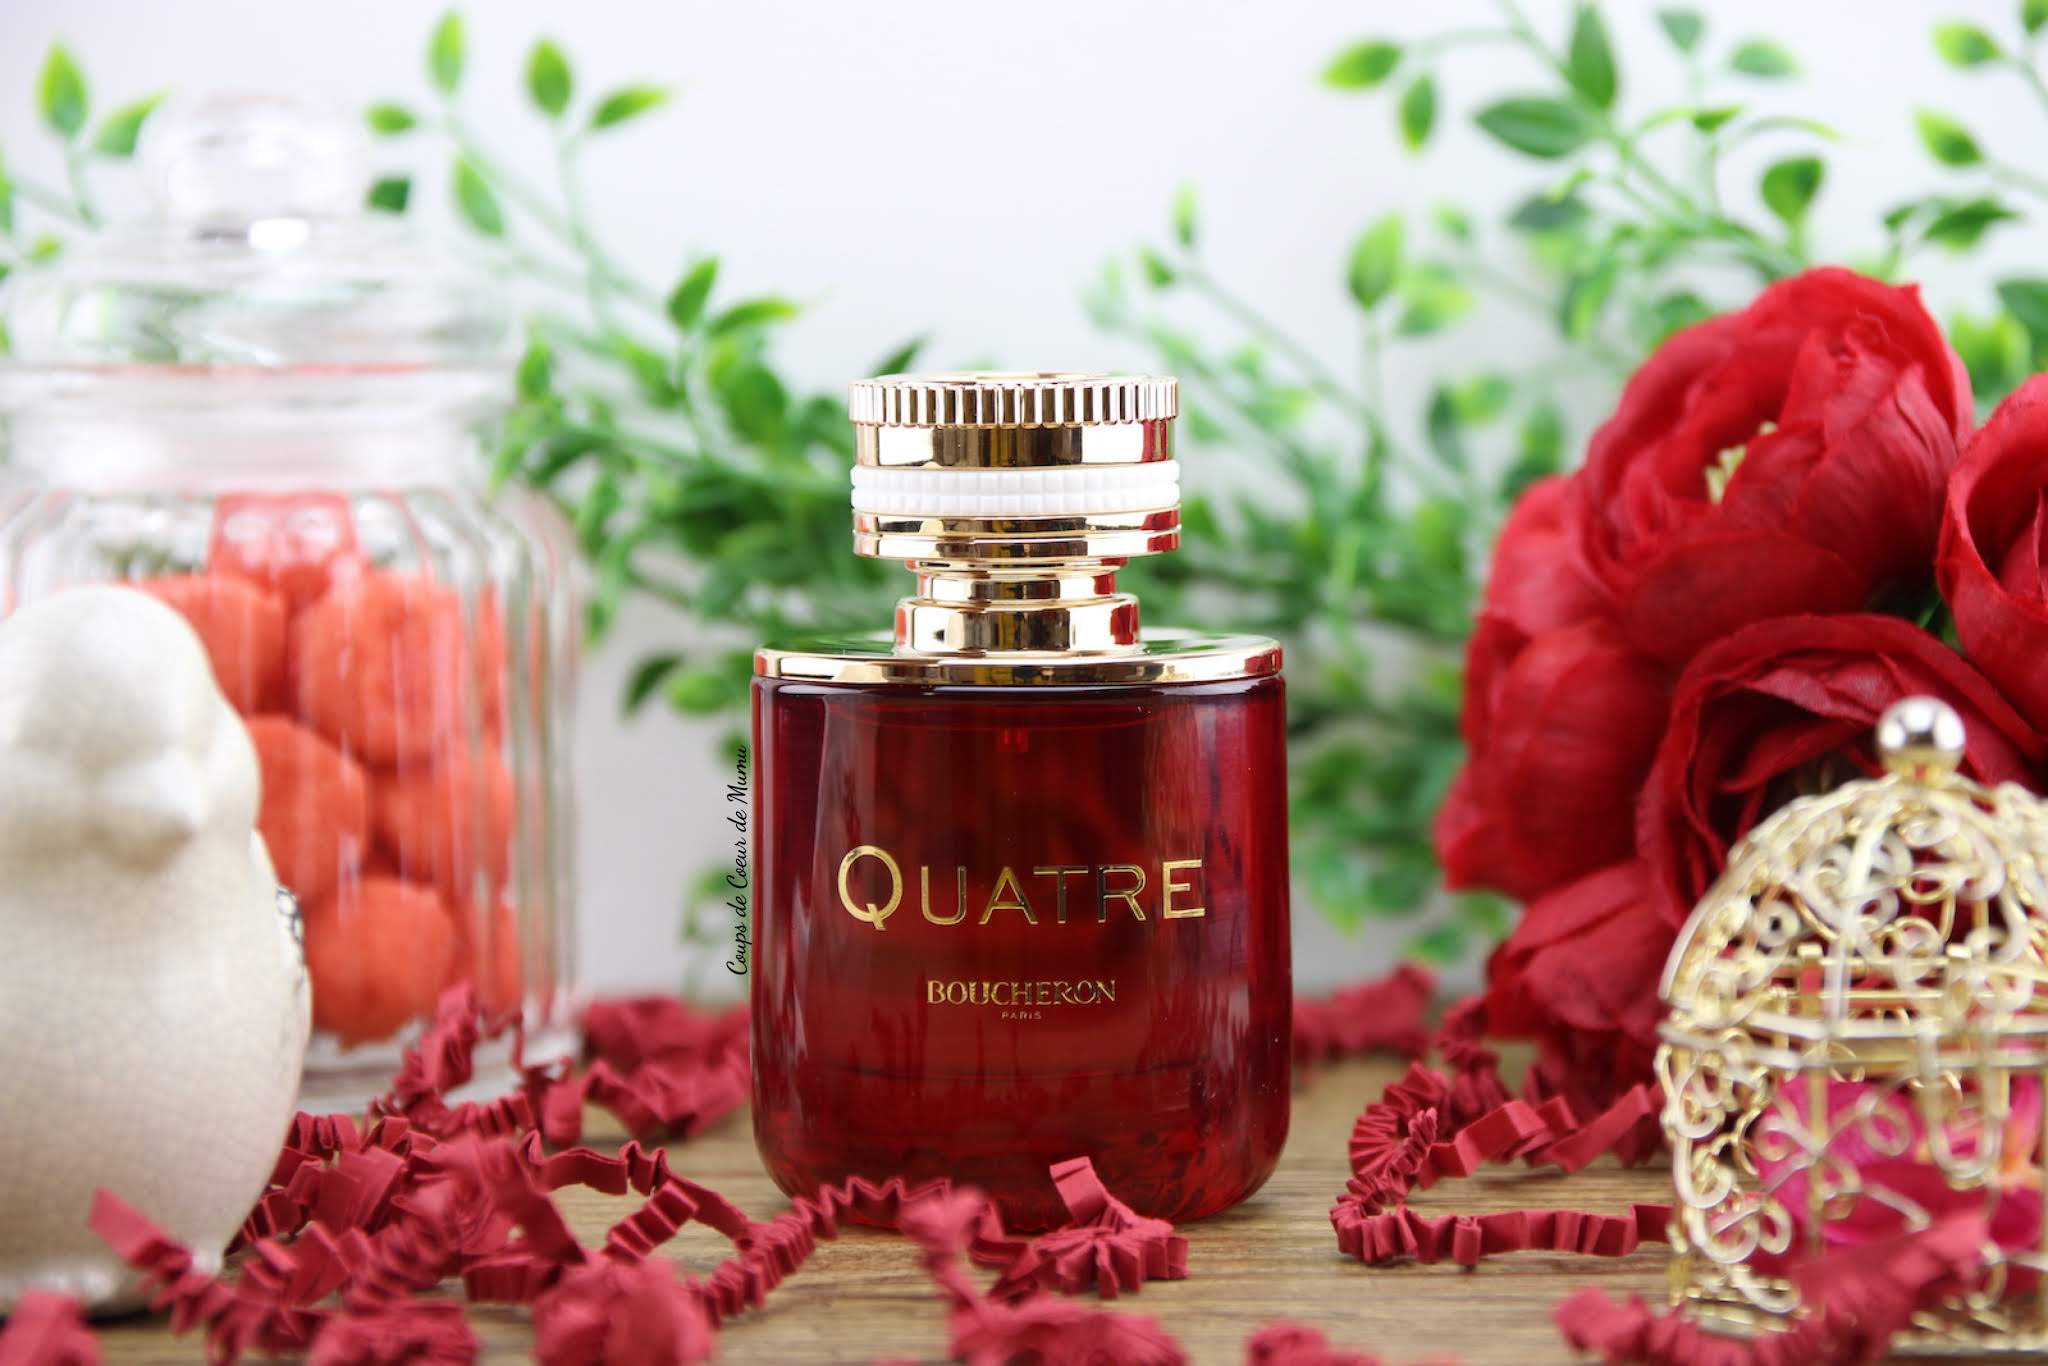 Mon avis sur le nouveau Parfum Quatre en Rouge de Boucheron disponible sur le site Notino.